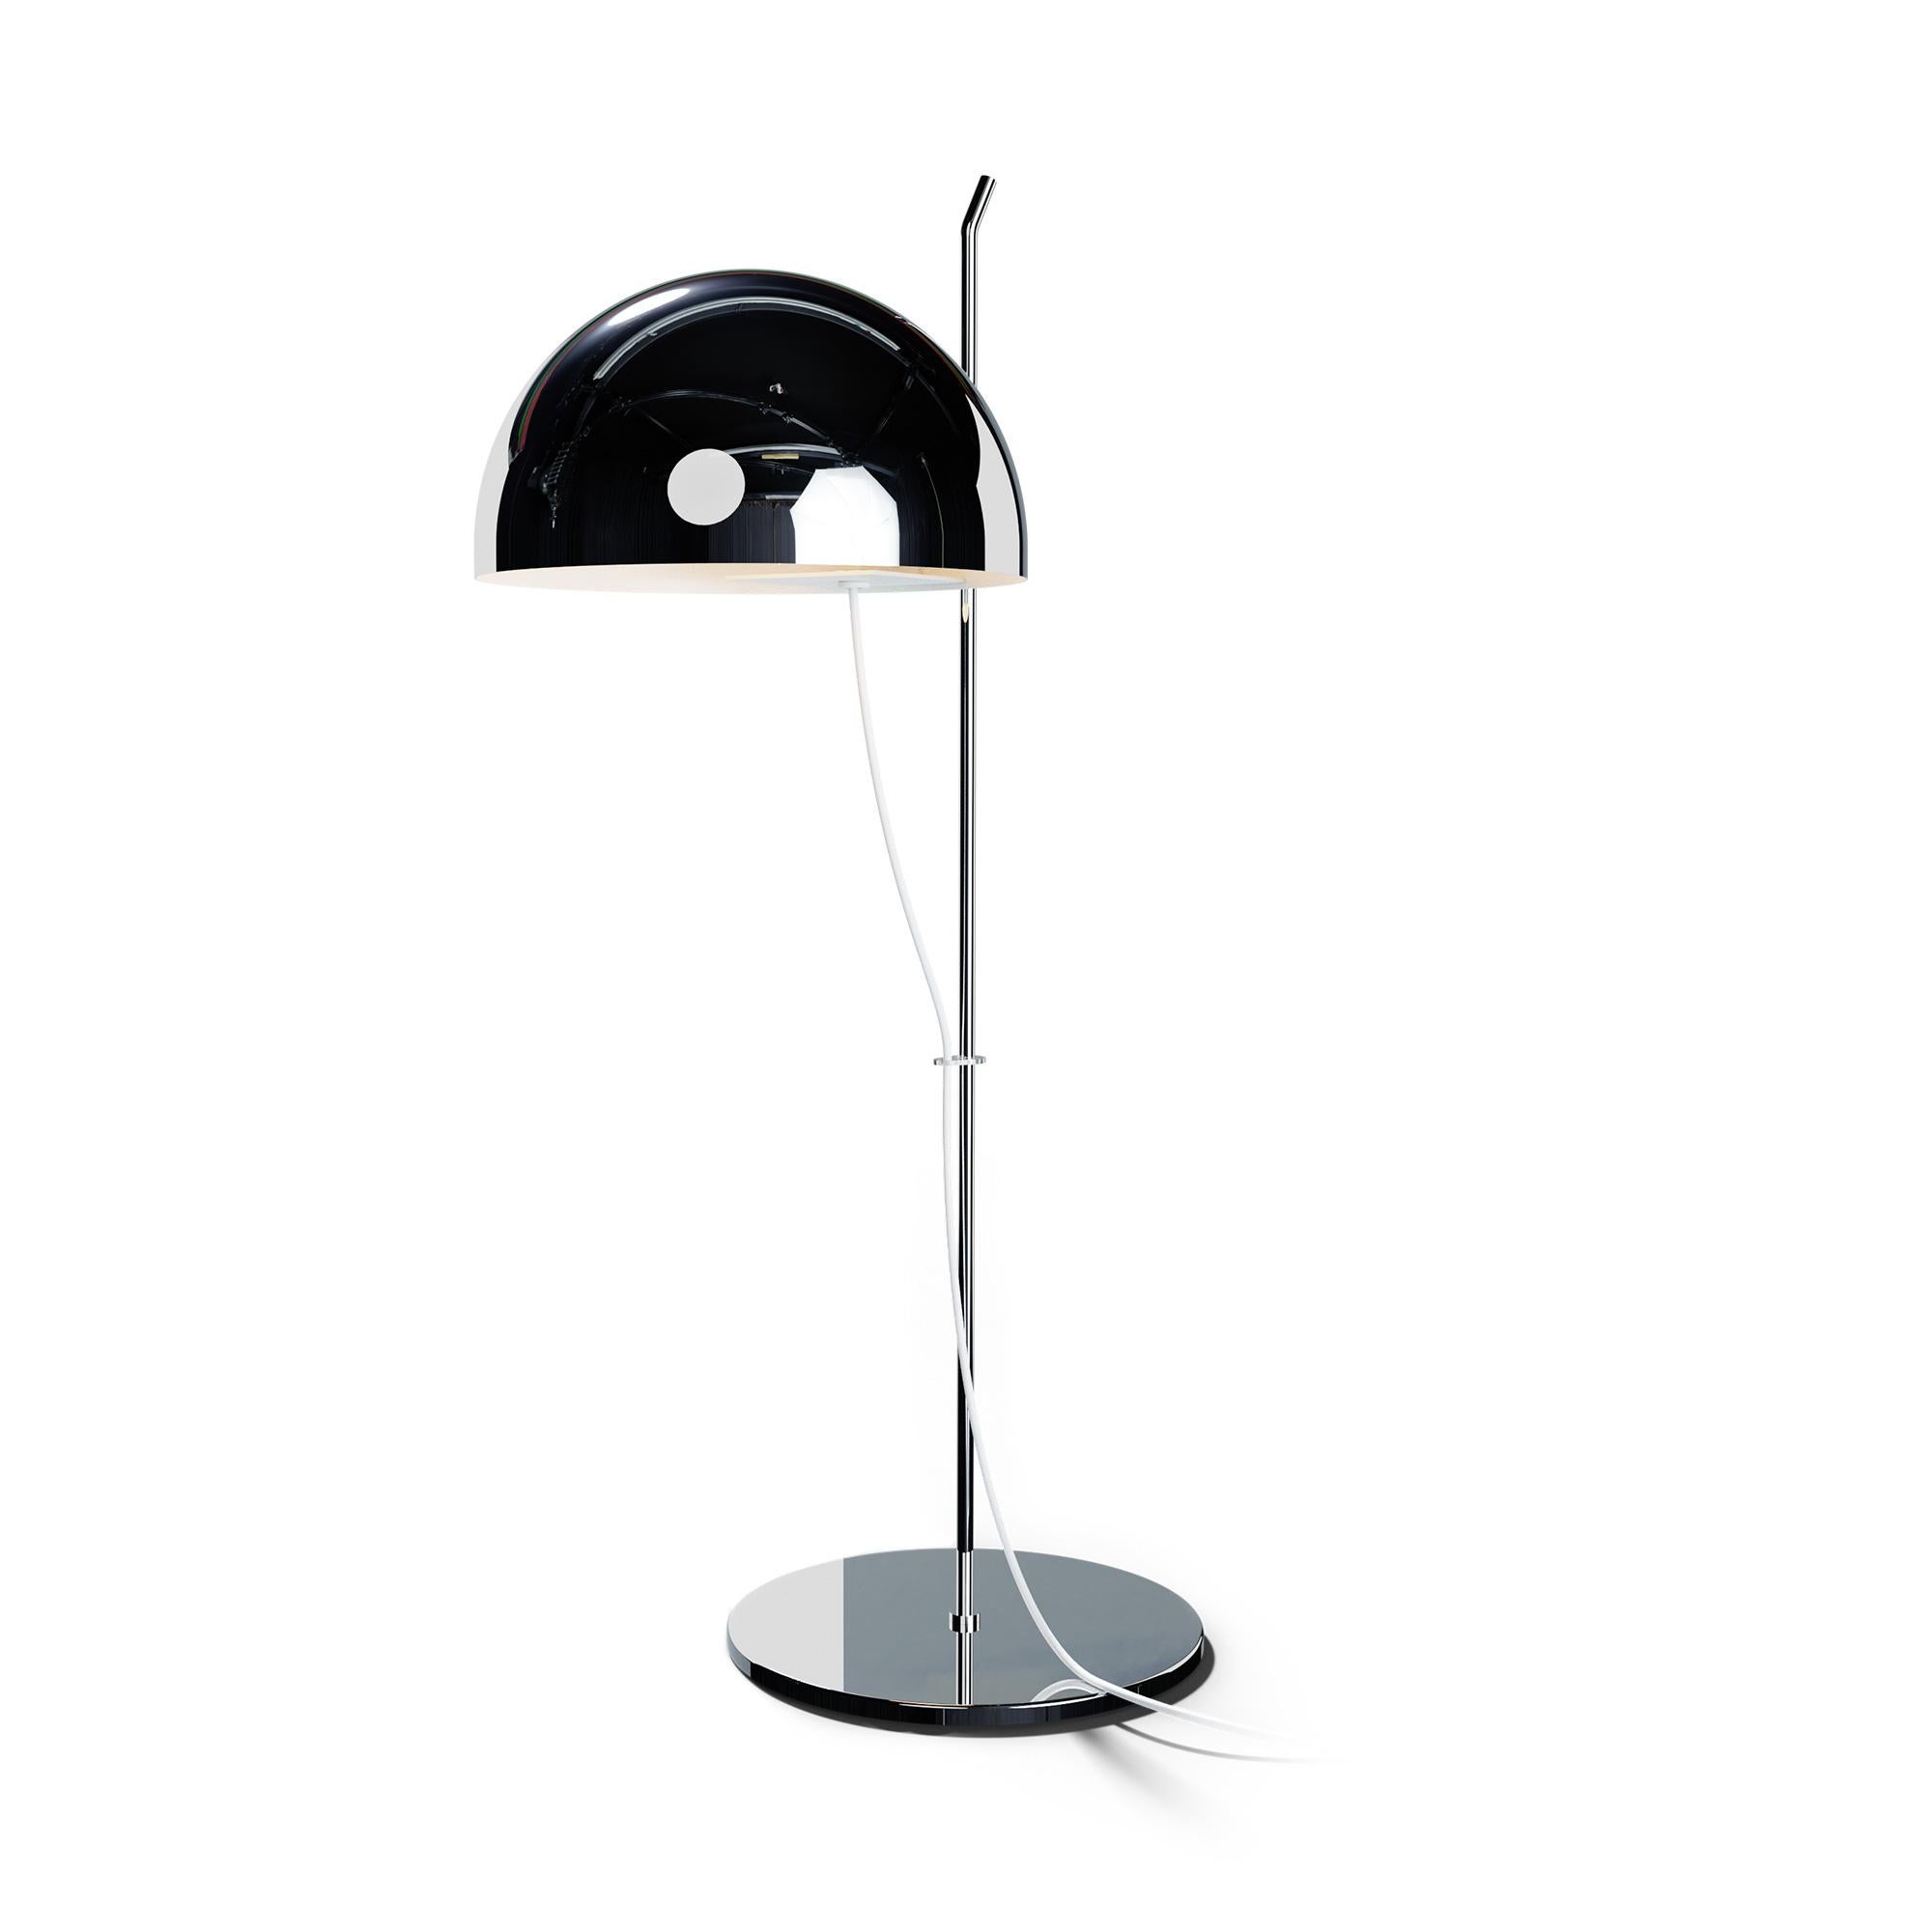 French Alain Richard 'A21' Desk Lamp in Chrome for Disderot For Sale